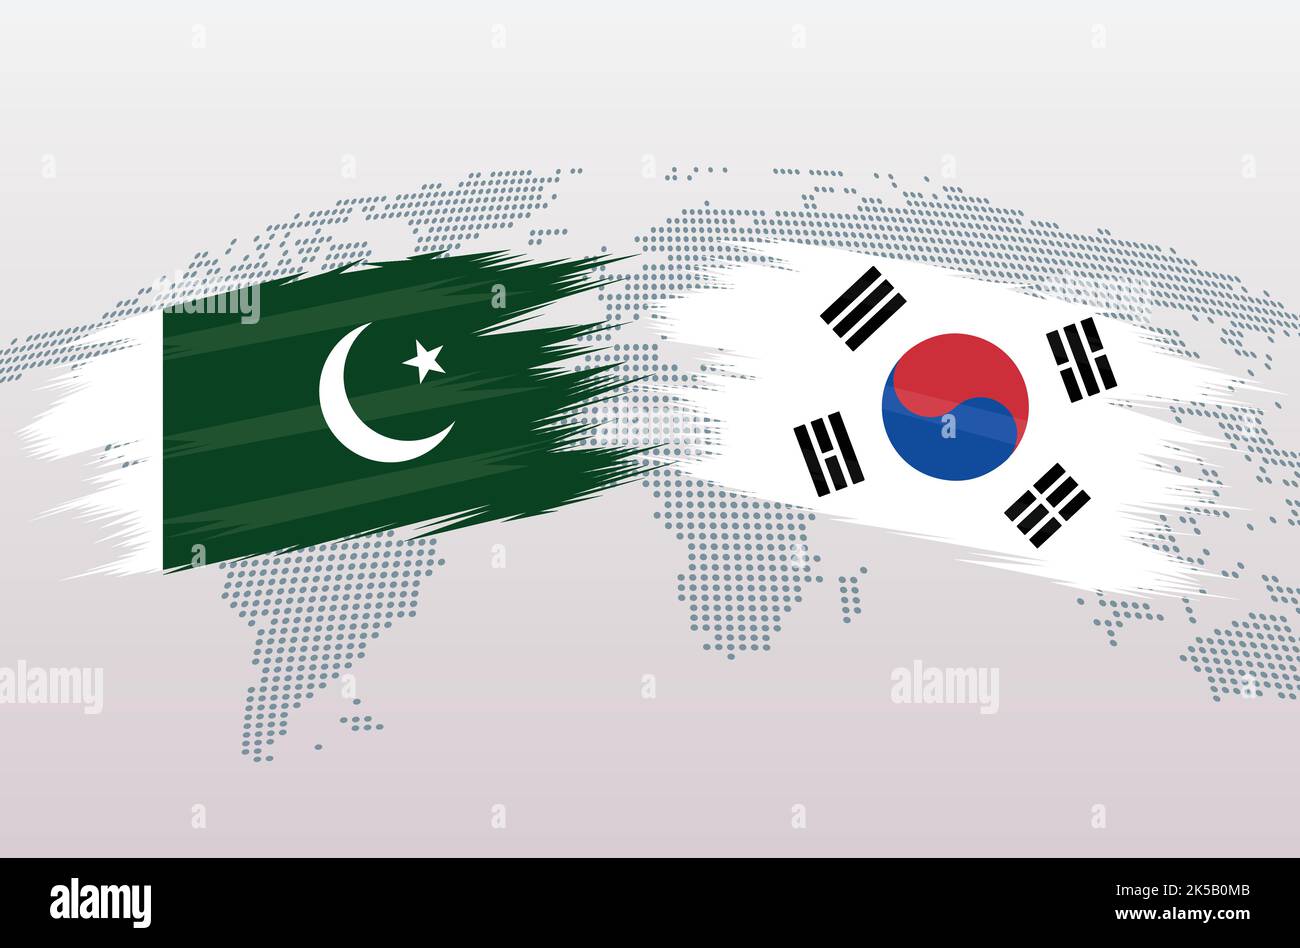 Pakistan gegen Südkorea Flaggen. Islamische Republik Pakistan VS B Flaggen, isoliert auf grauem Hintergrund der Weltkarte. Vektorgrafik. Stock Vektor